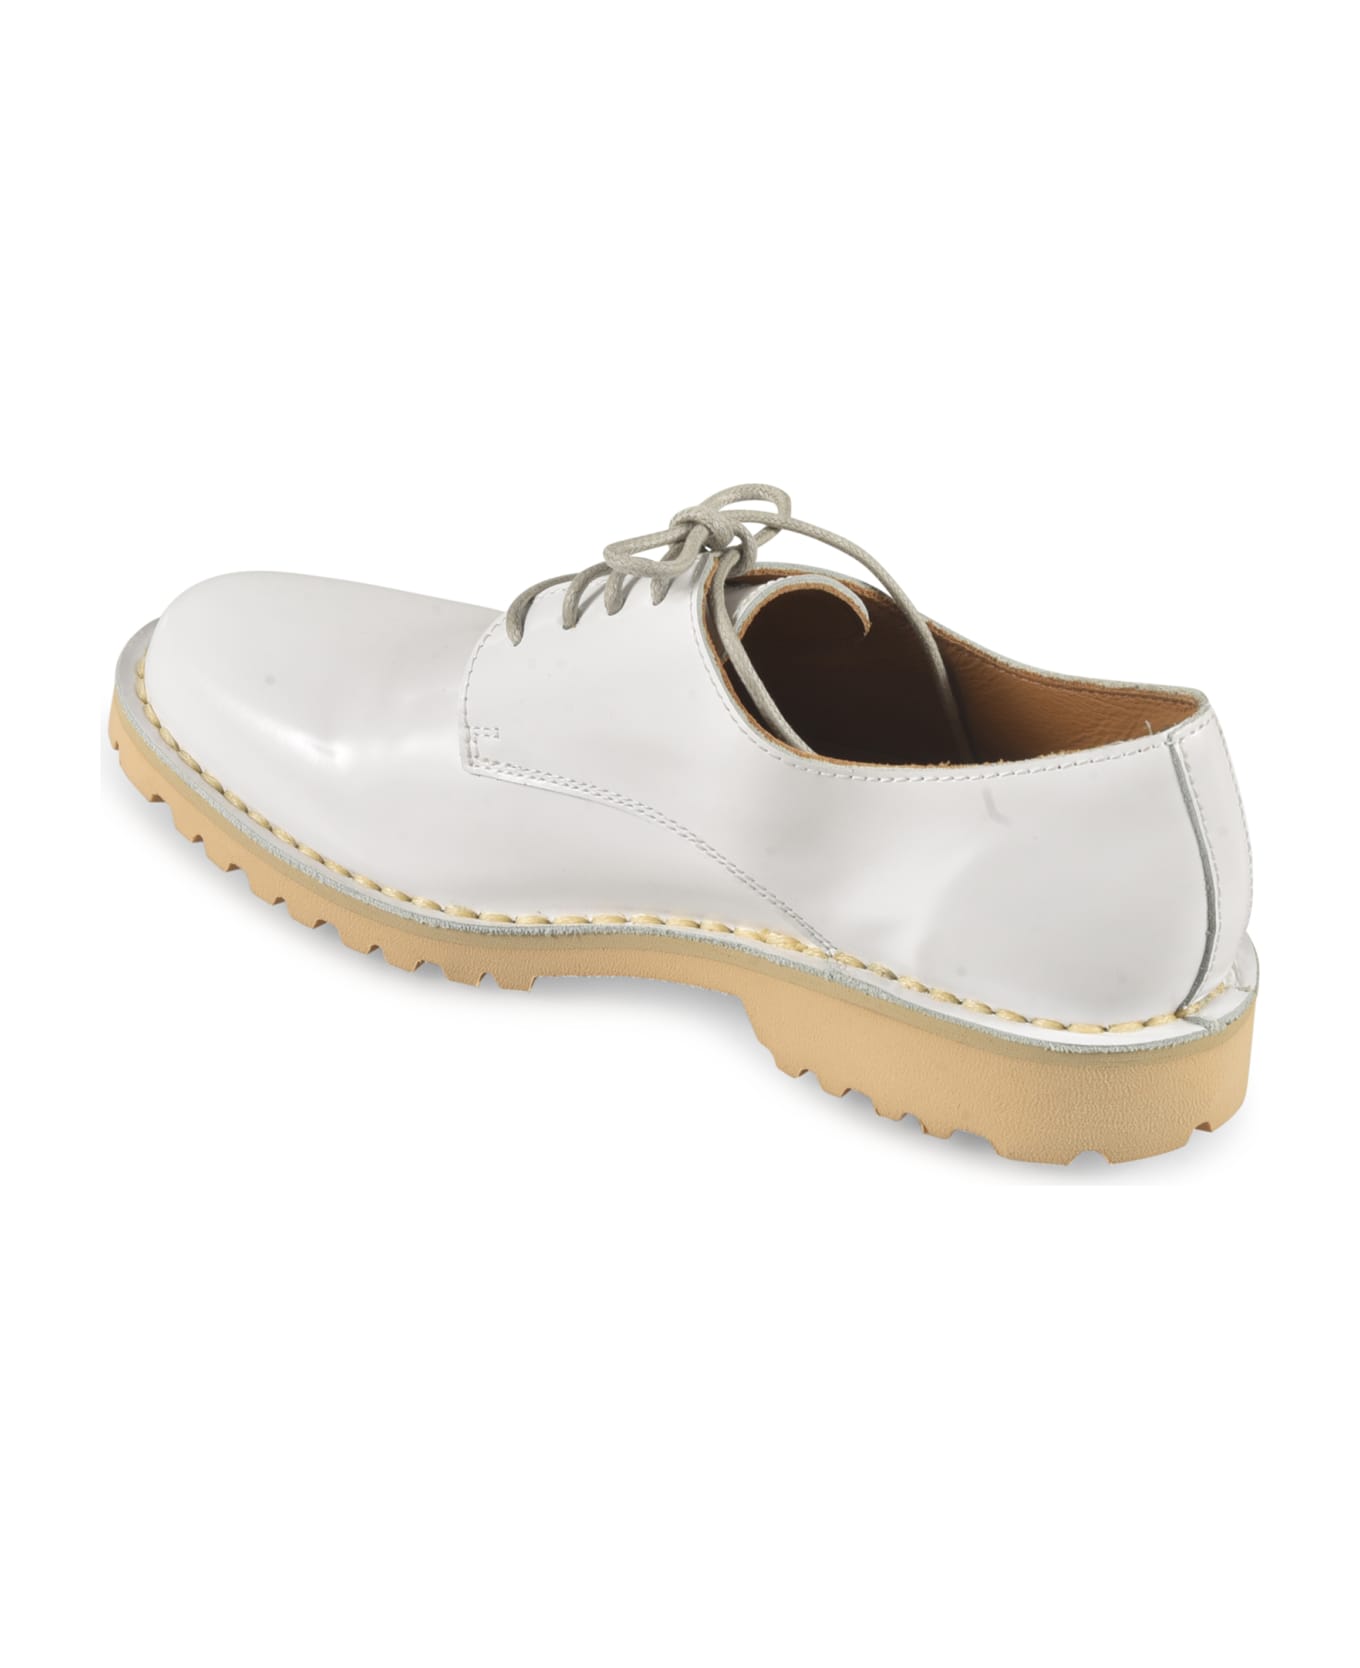 Sofie d'Hoore Filos Derby Shoes - White